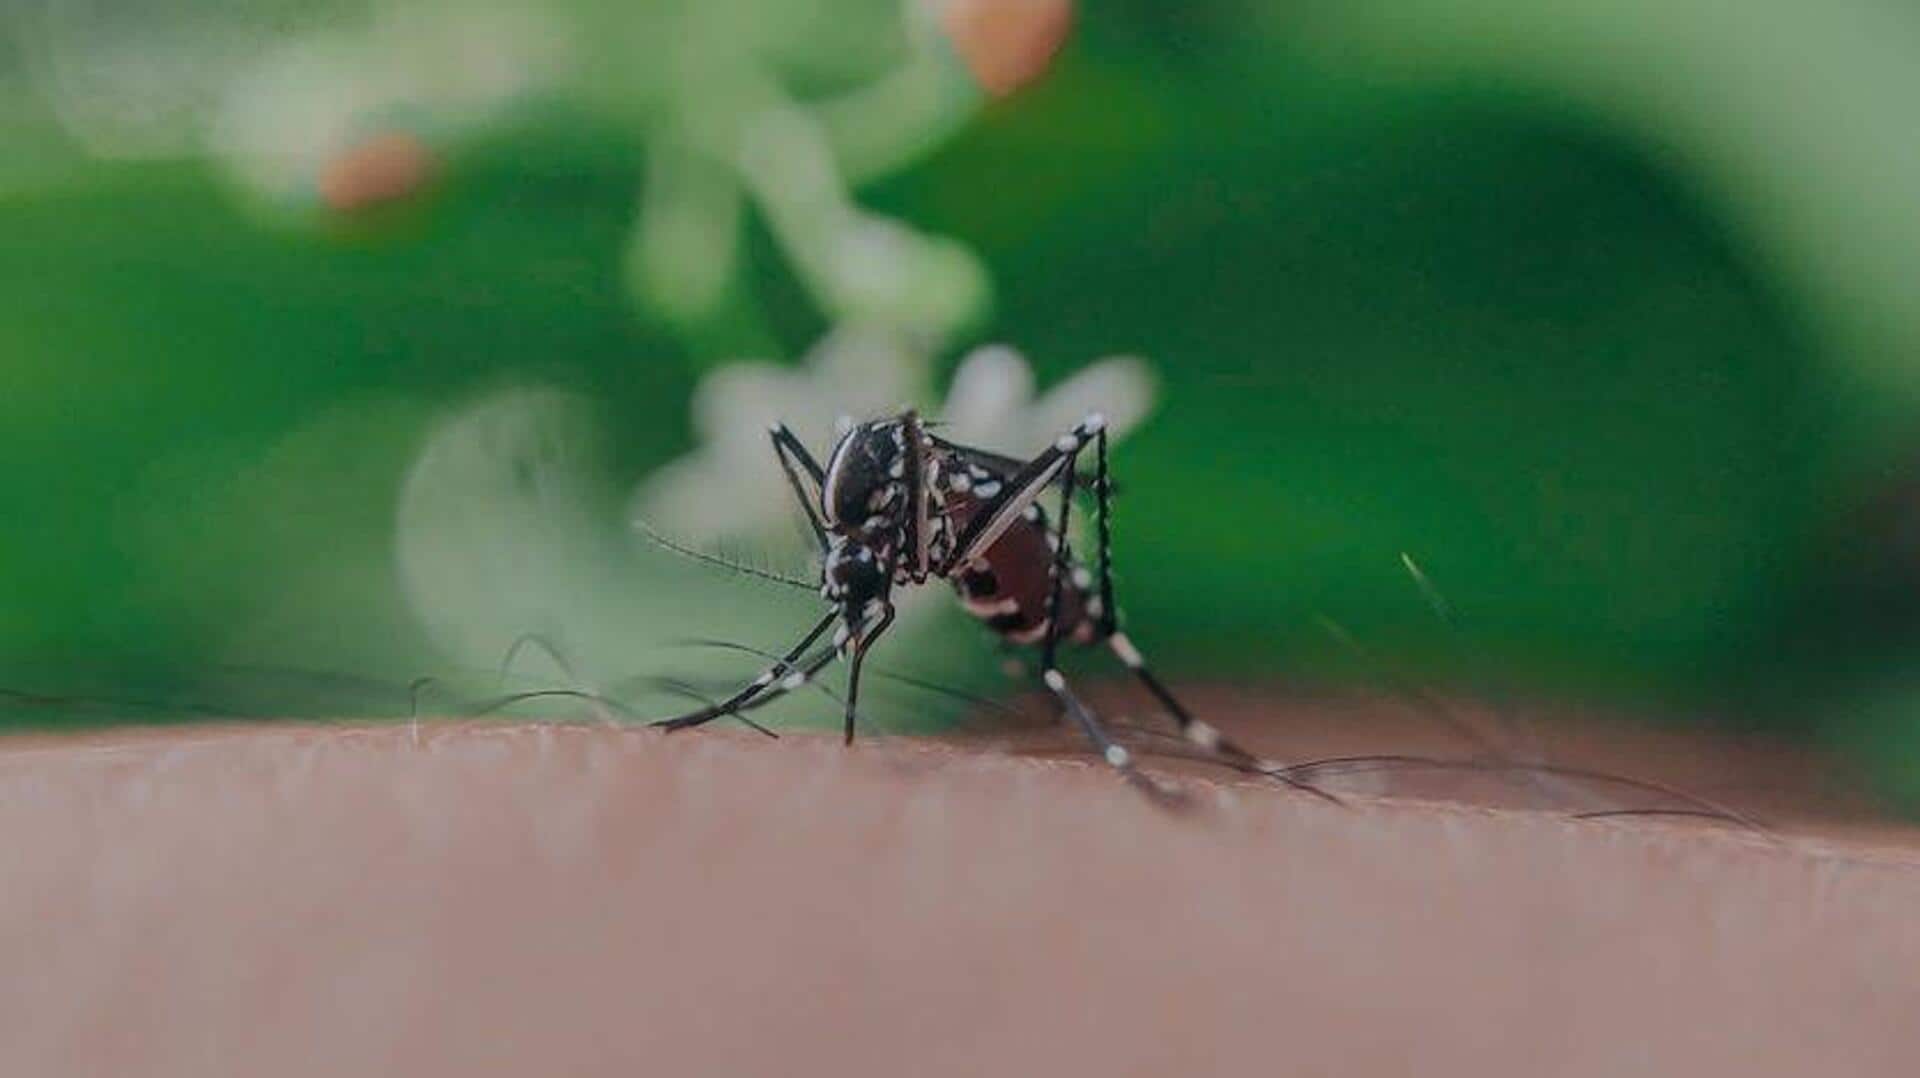 देश में लगातार बढ़ रहे डेंगू के मामले, बचाव के लिए इन 5 तरीकों को आजमाएं